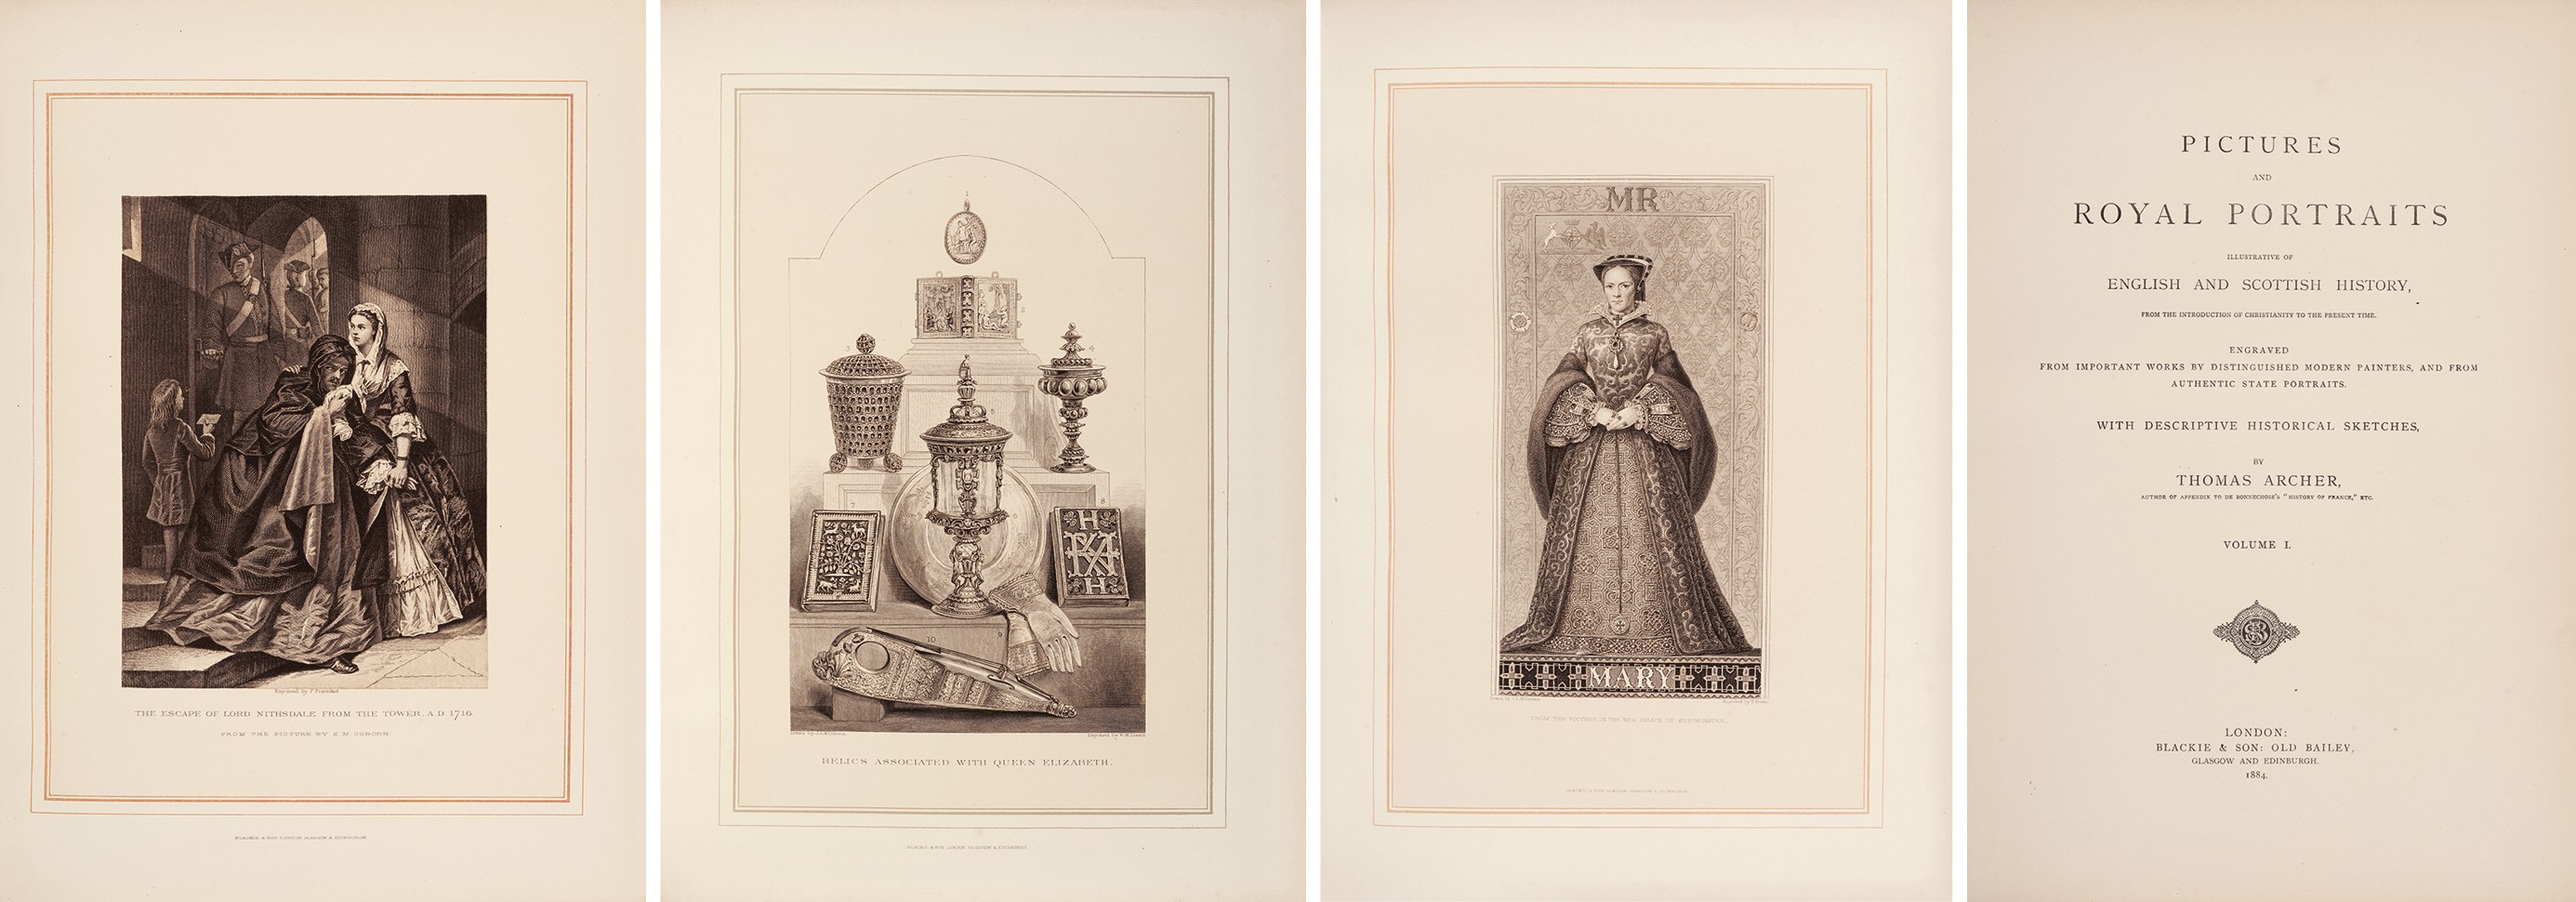 英国皇家肖像版画集 1884年伦敦 Blackie & Son 出版